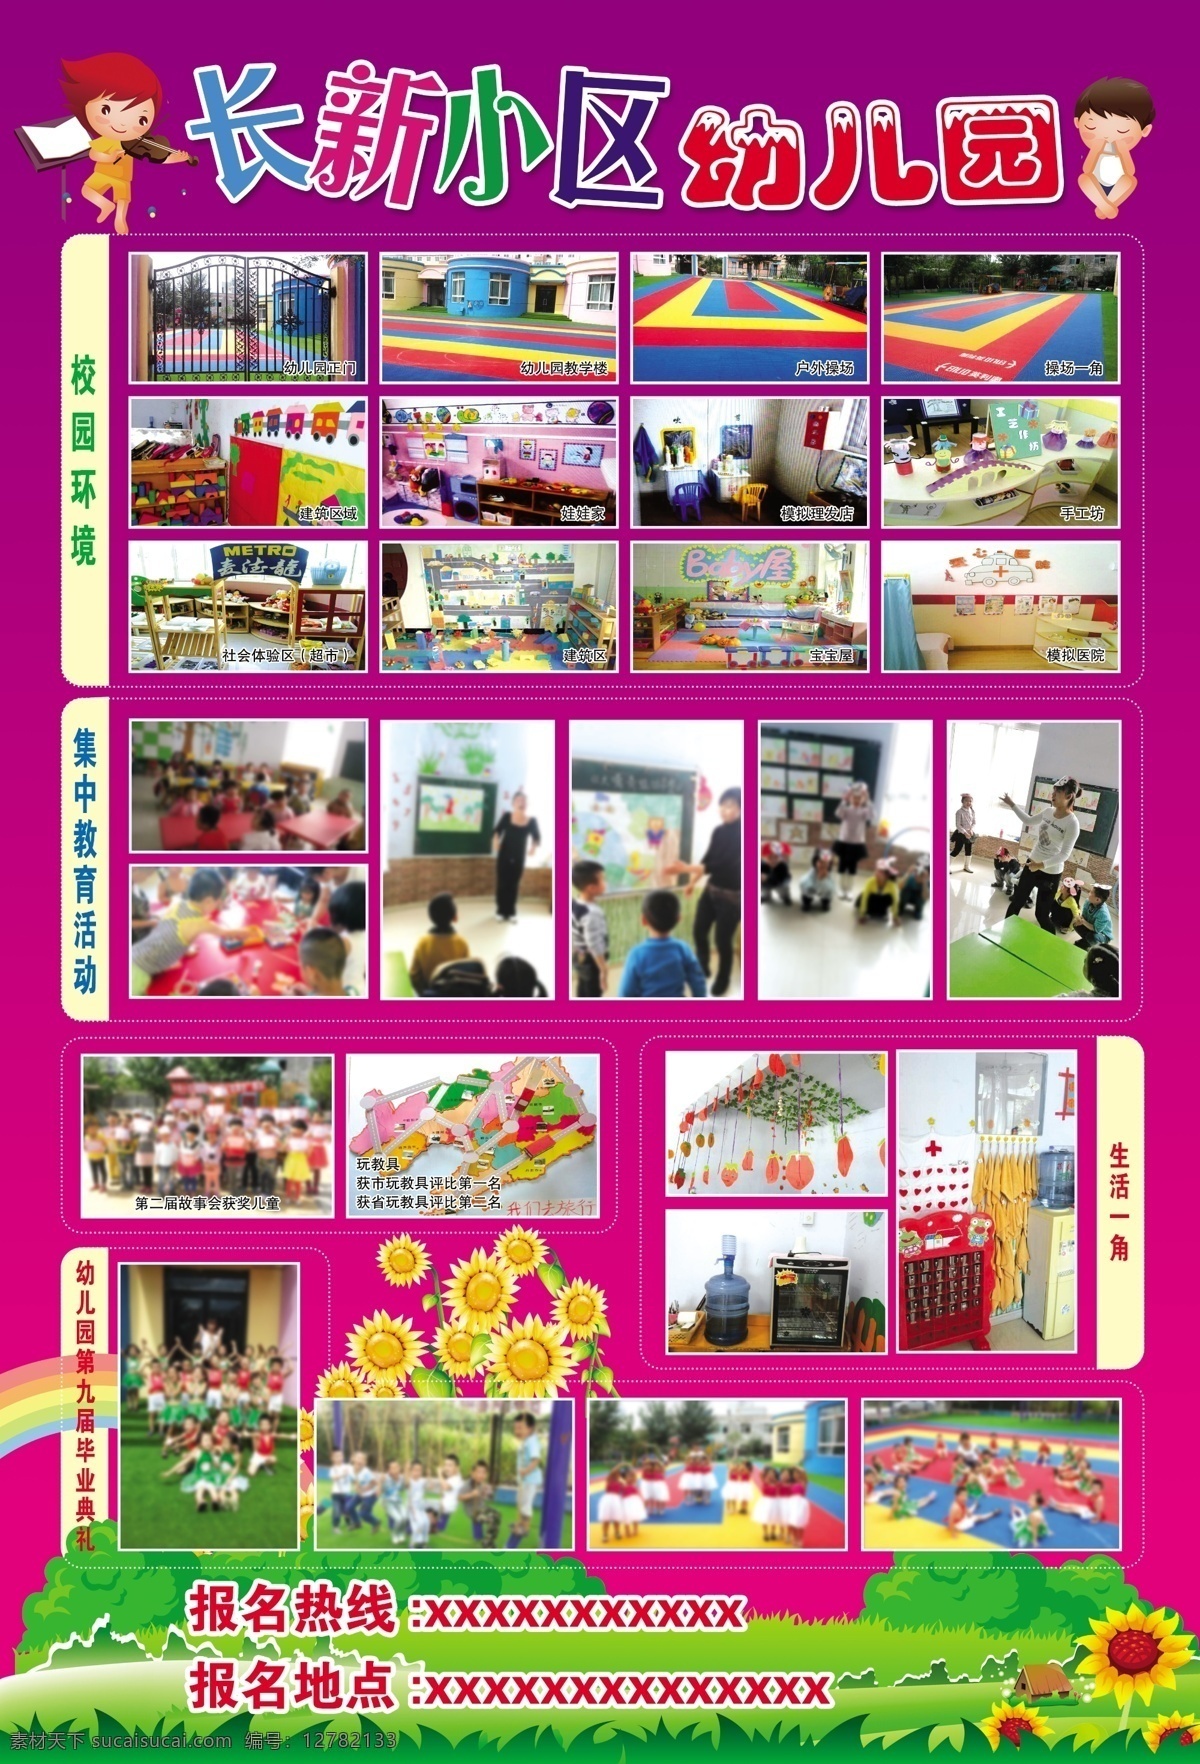 长新 小区 幼儿园 宣传单 传单 招生 宣传单页 招生简章 设计源文件 dm宣传单 紫色